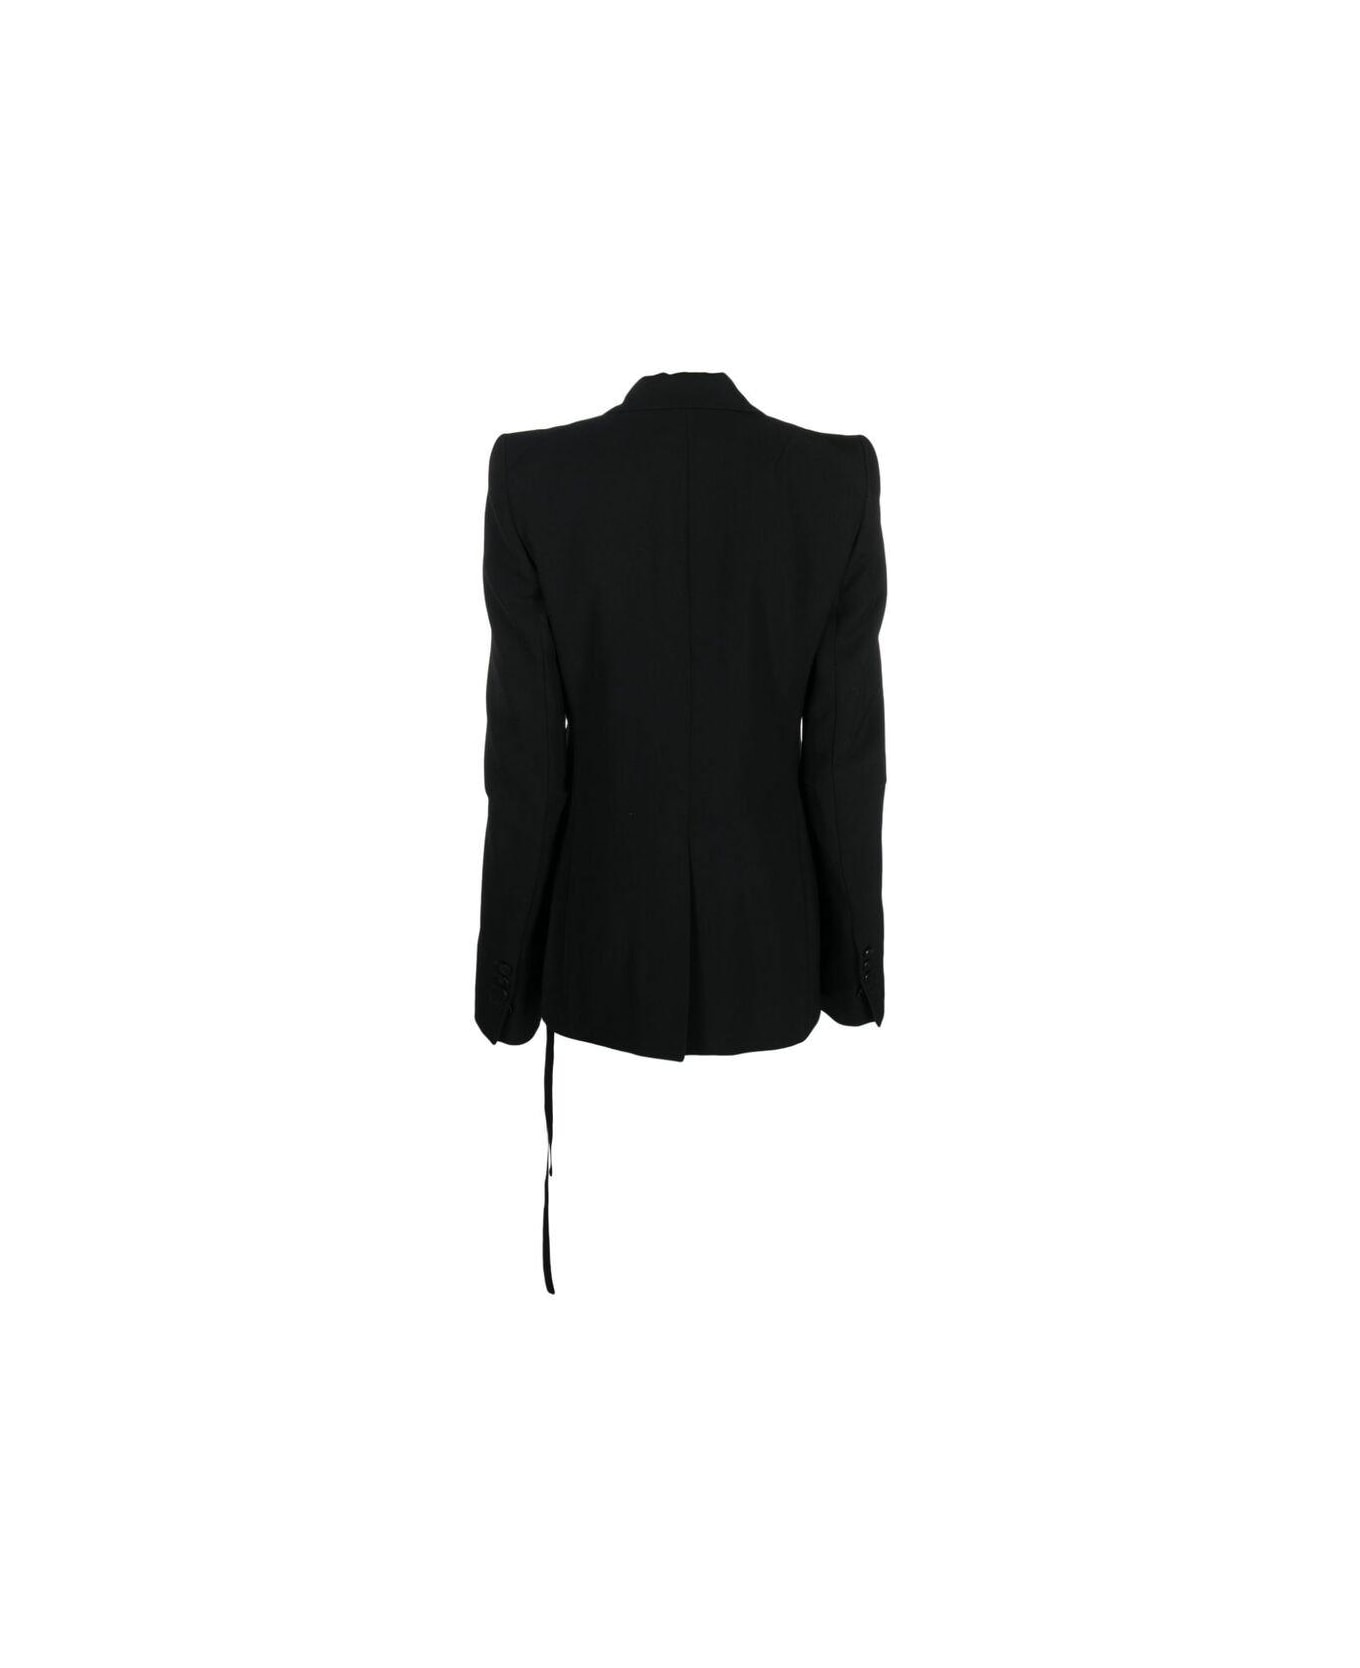 Ann Demeulemeester Tassle Detailed Jacket - BLACK